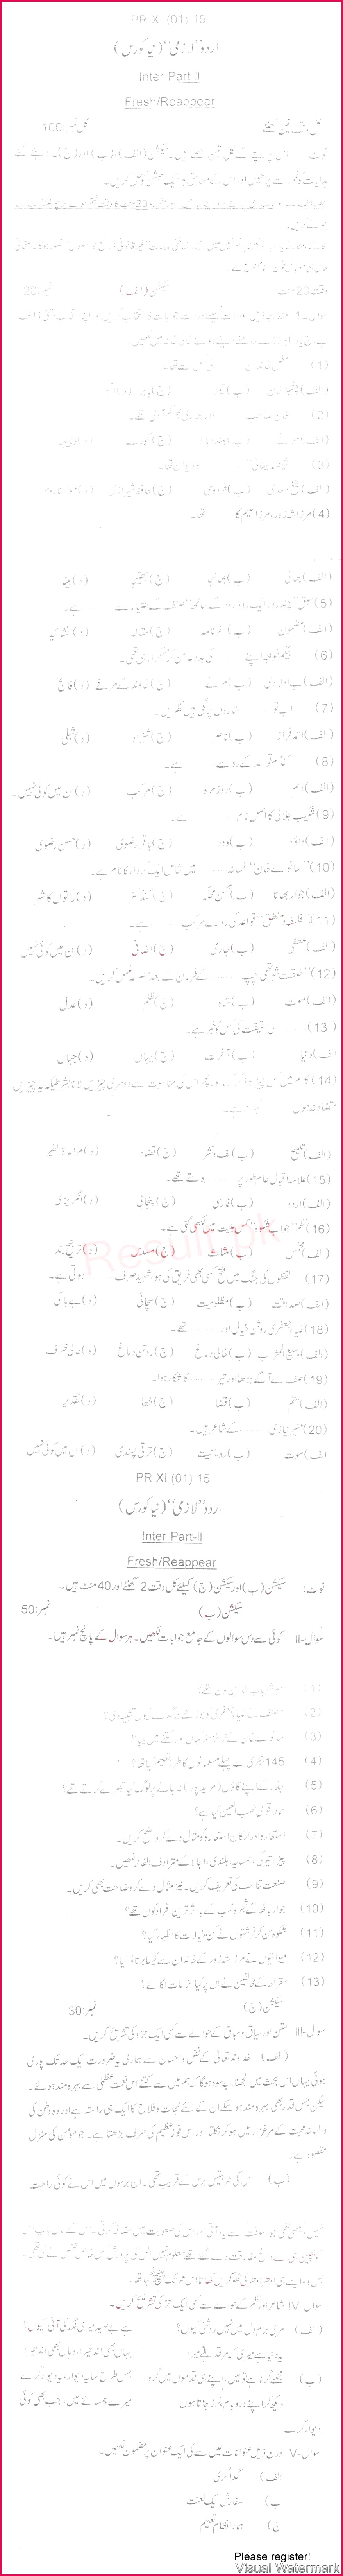 BISE Bannu hssc Part 2 Urdu Past Paper 2015